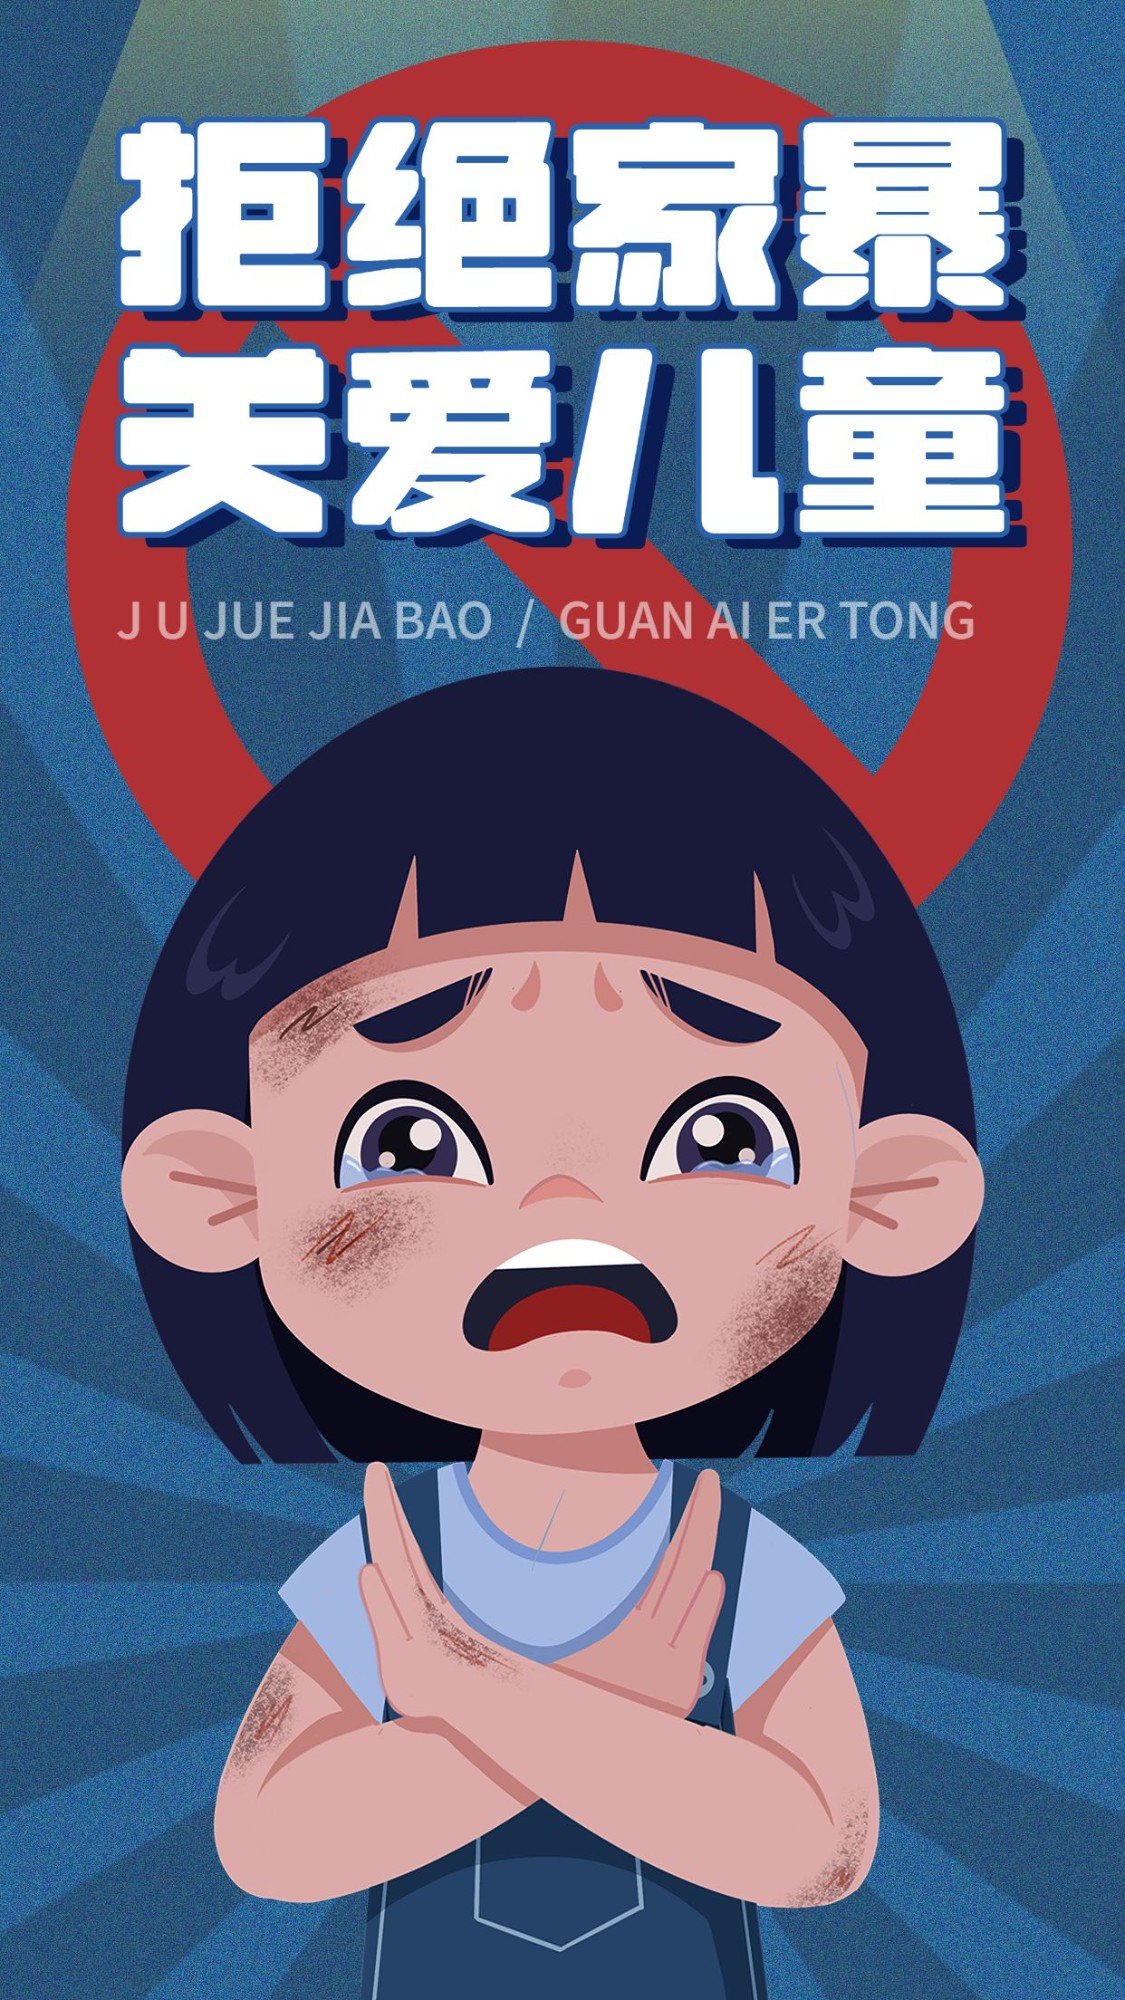 拒绝家暴关爱儿童公益宣传手机海报预览效果